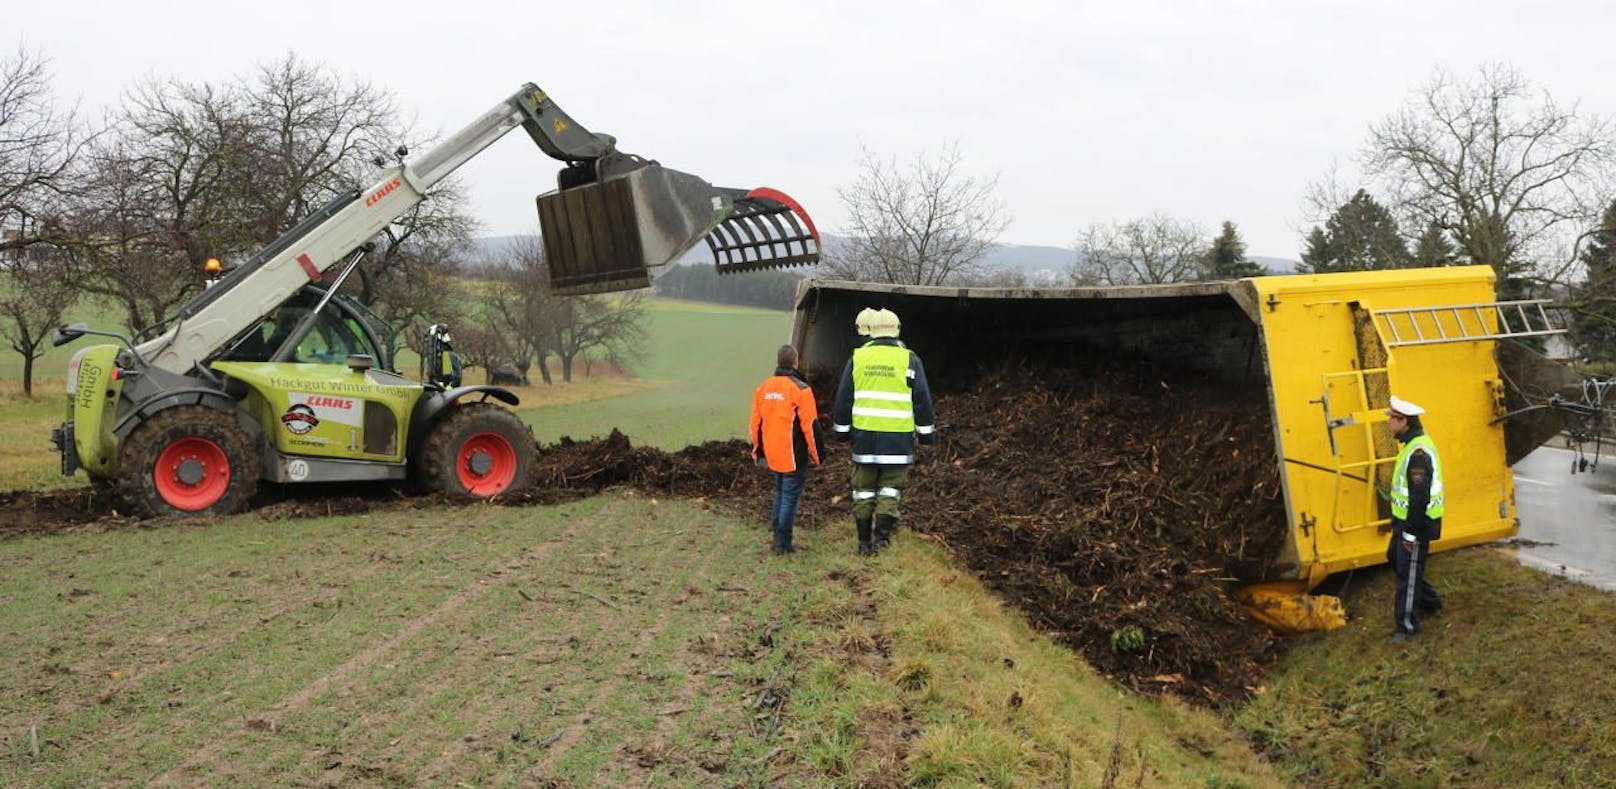 Voll beladener Traktor-Hänger stürzte in Graben